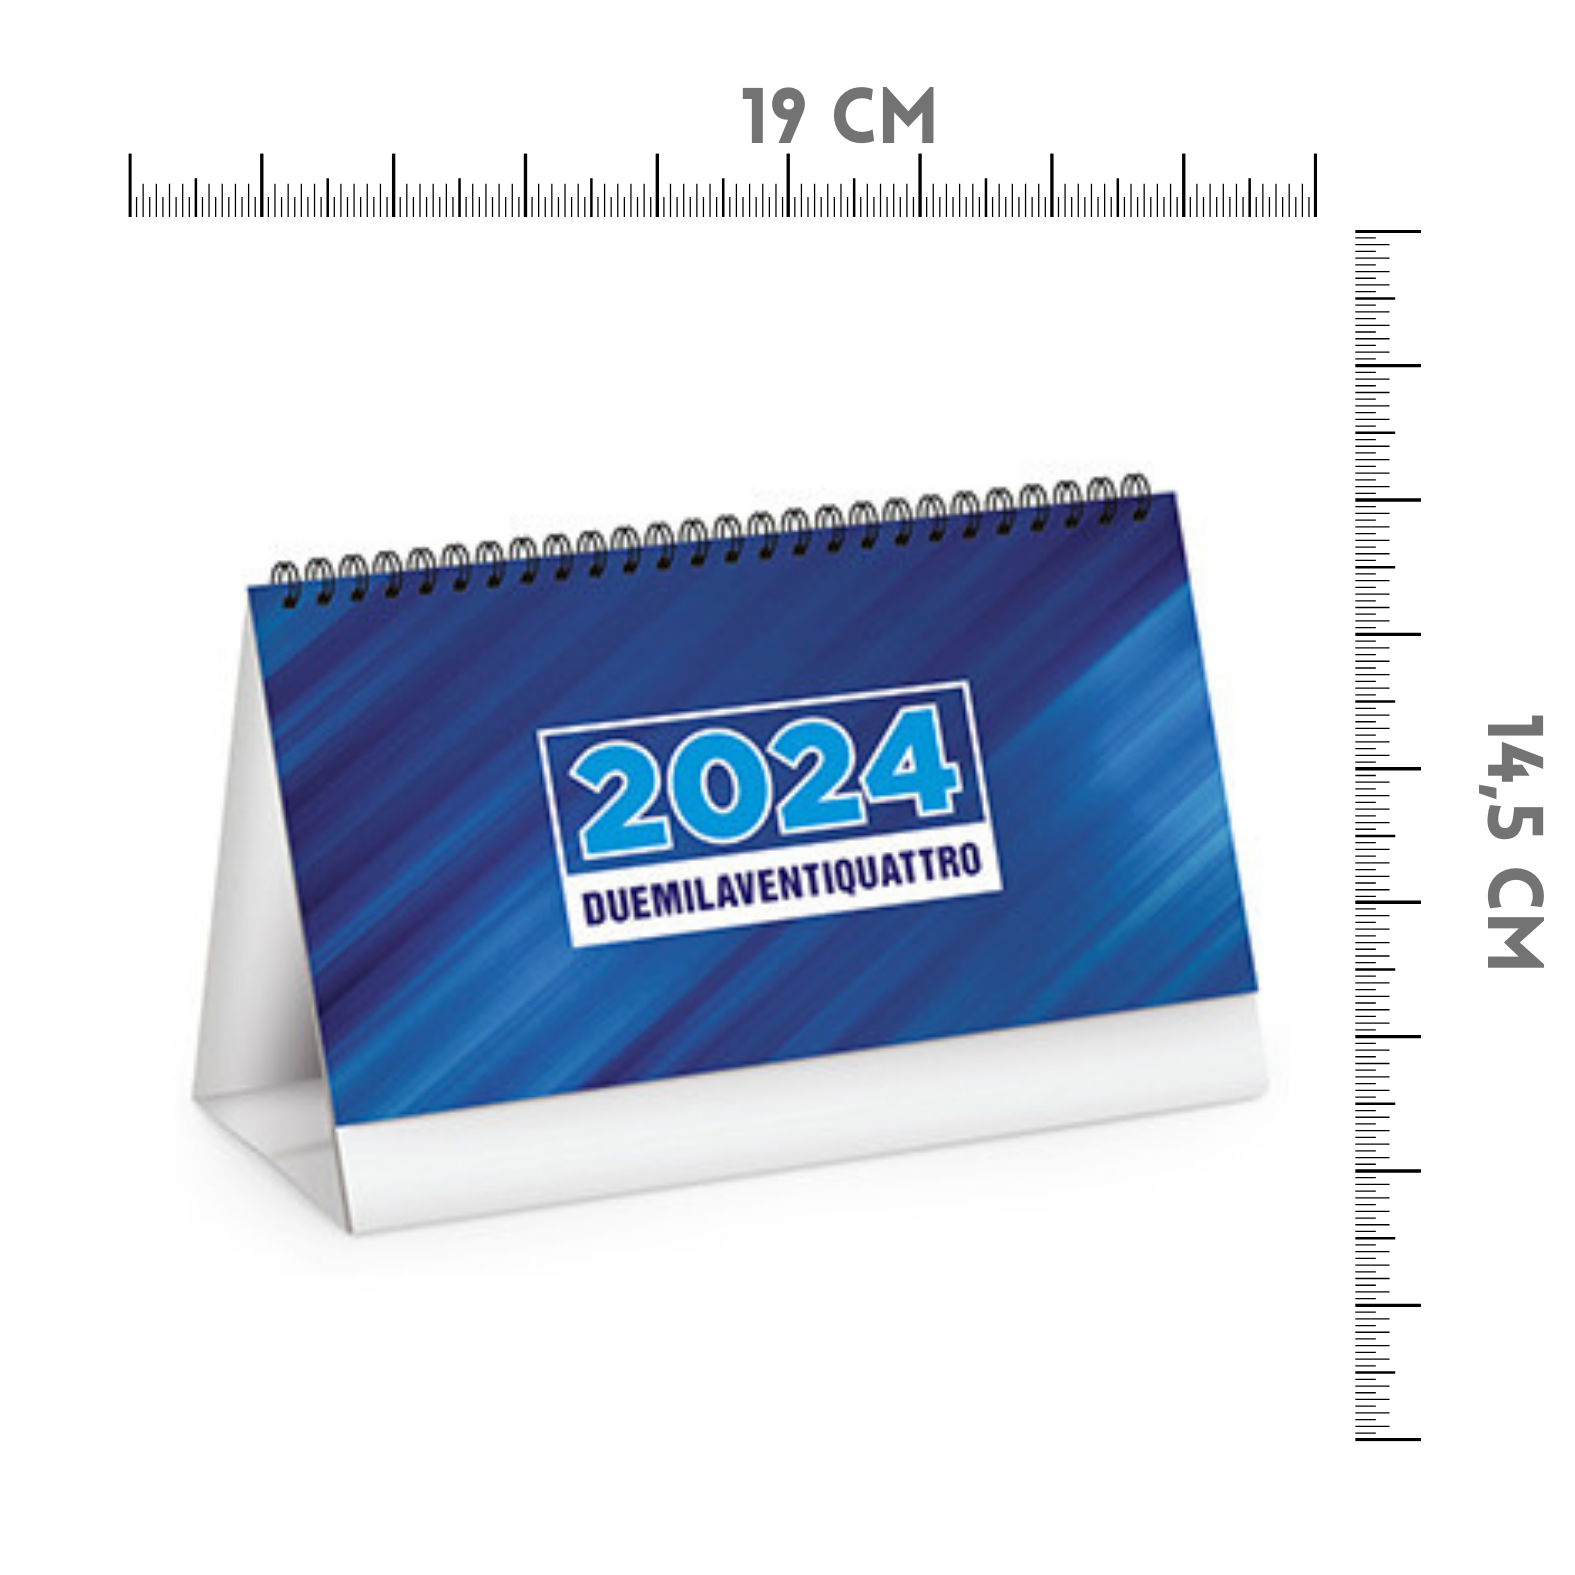 Calendari personalizzati 2024 da banco PA715